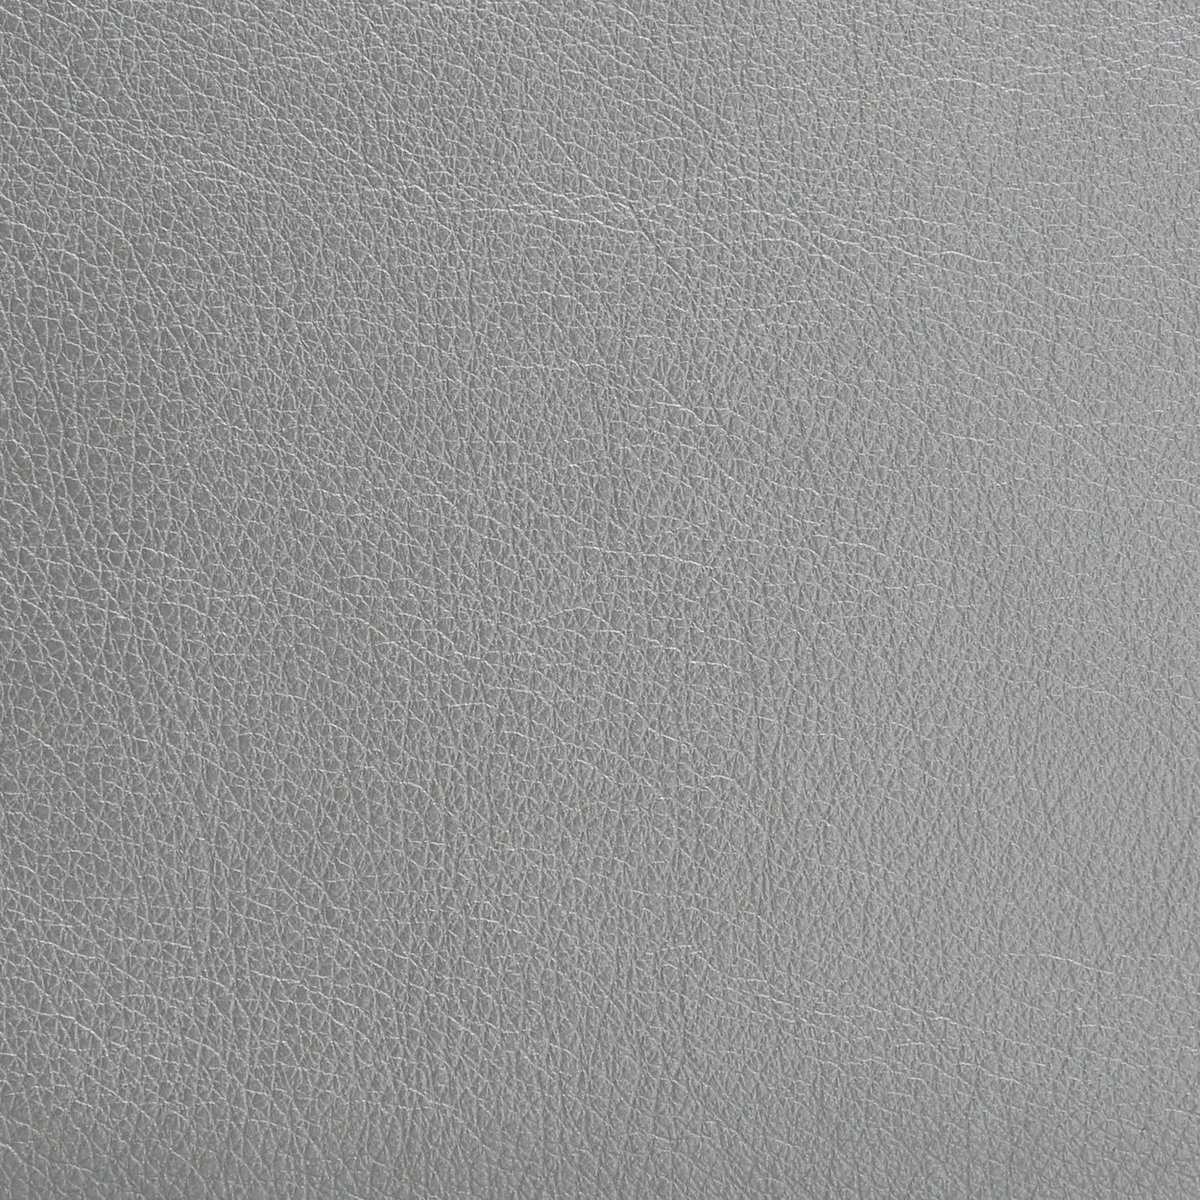 Leather-Pearlescent-Quartz